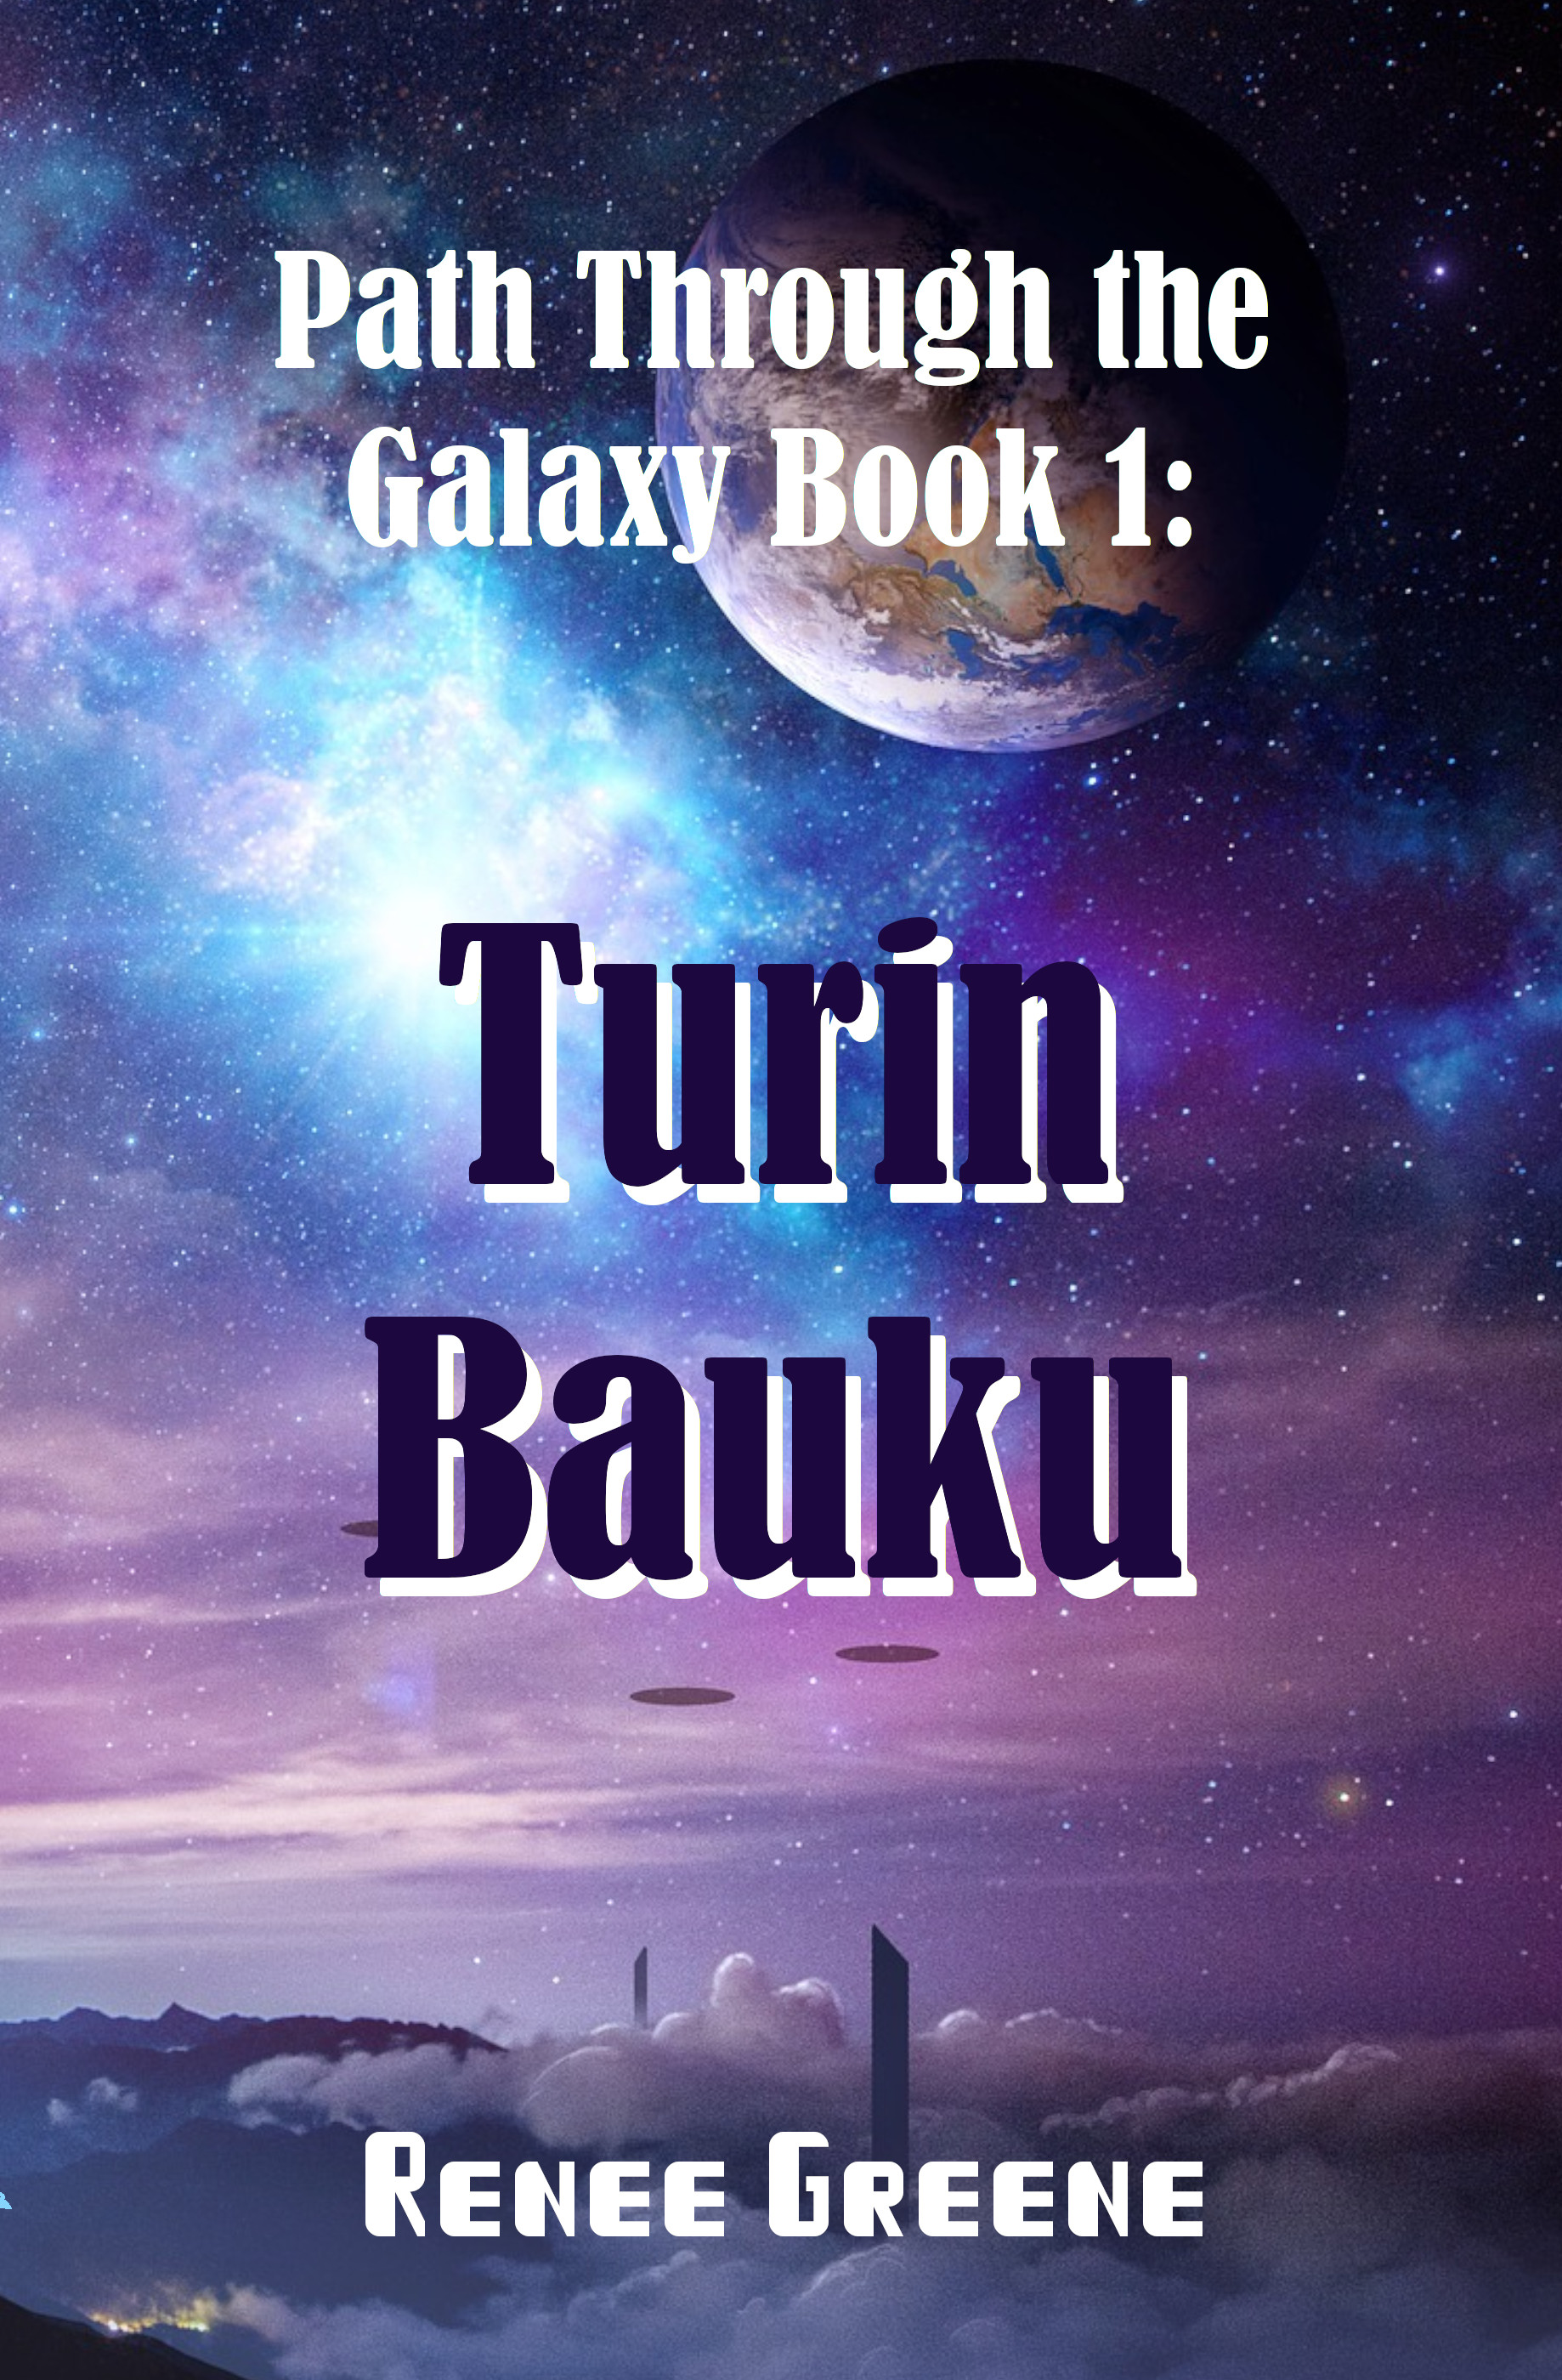 Path Through the Galaxy Book 1: Turin Baku